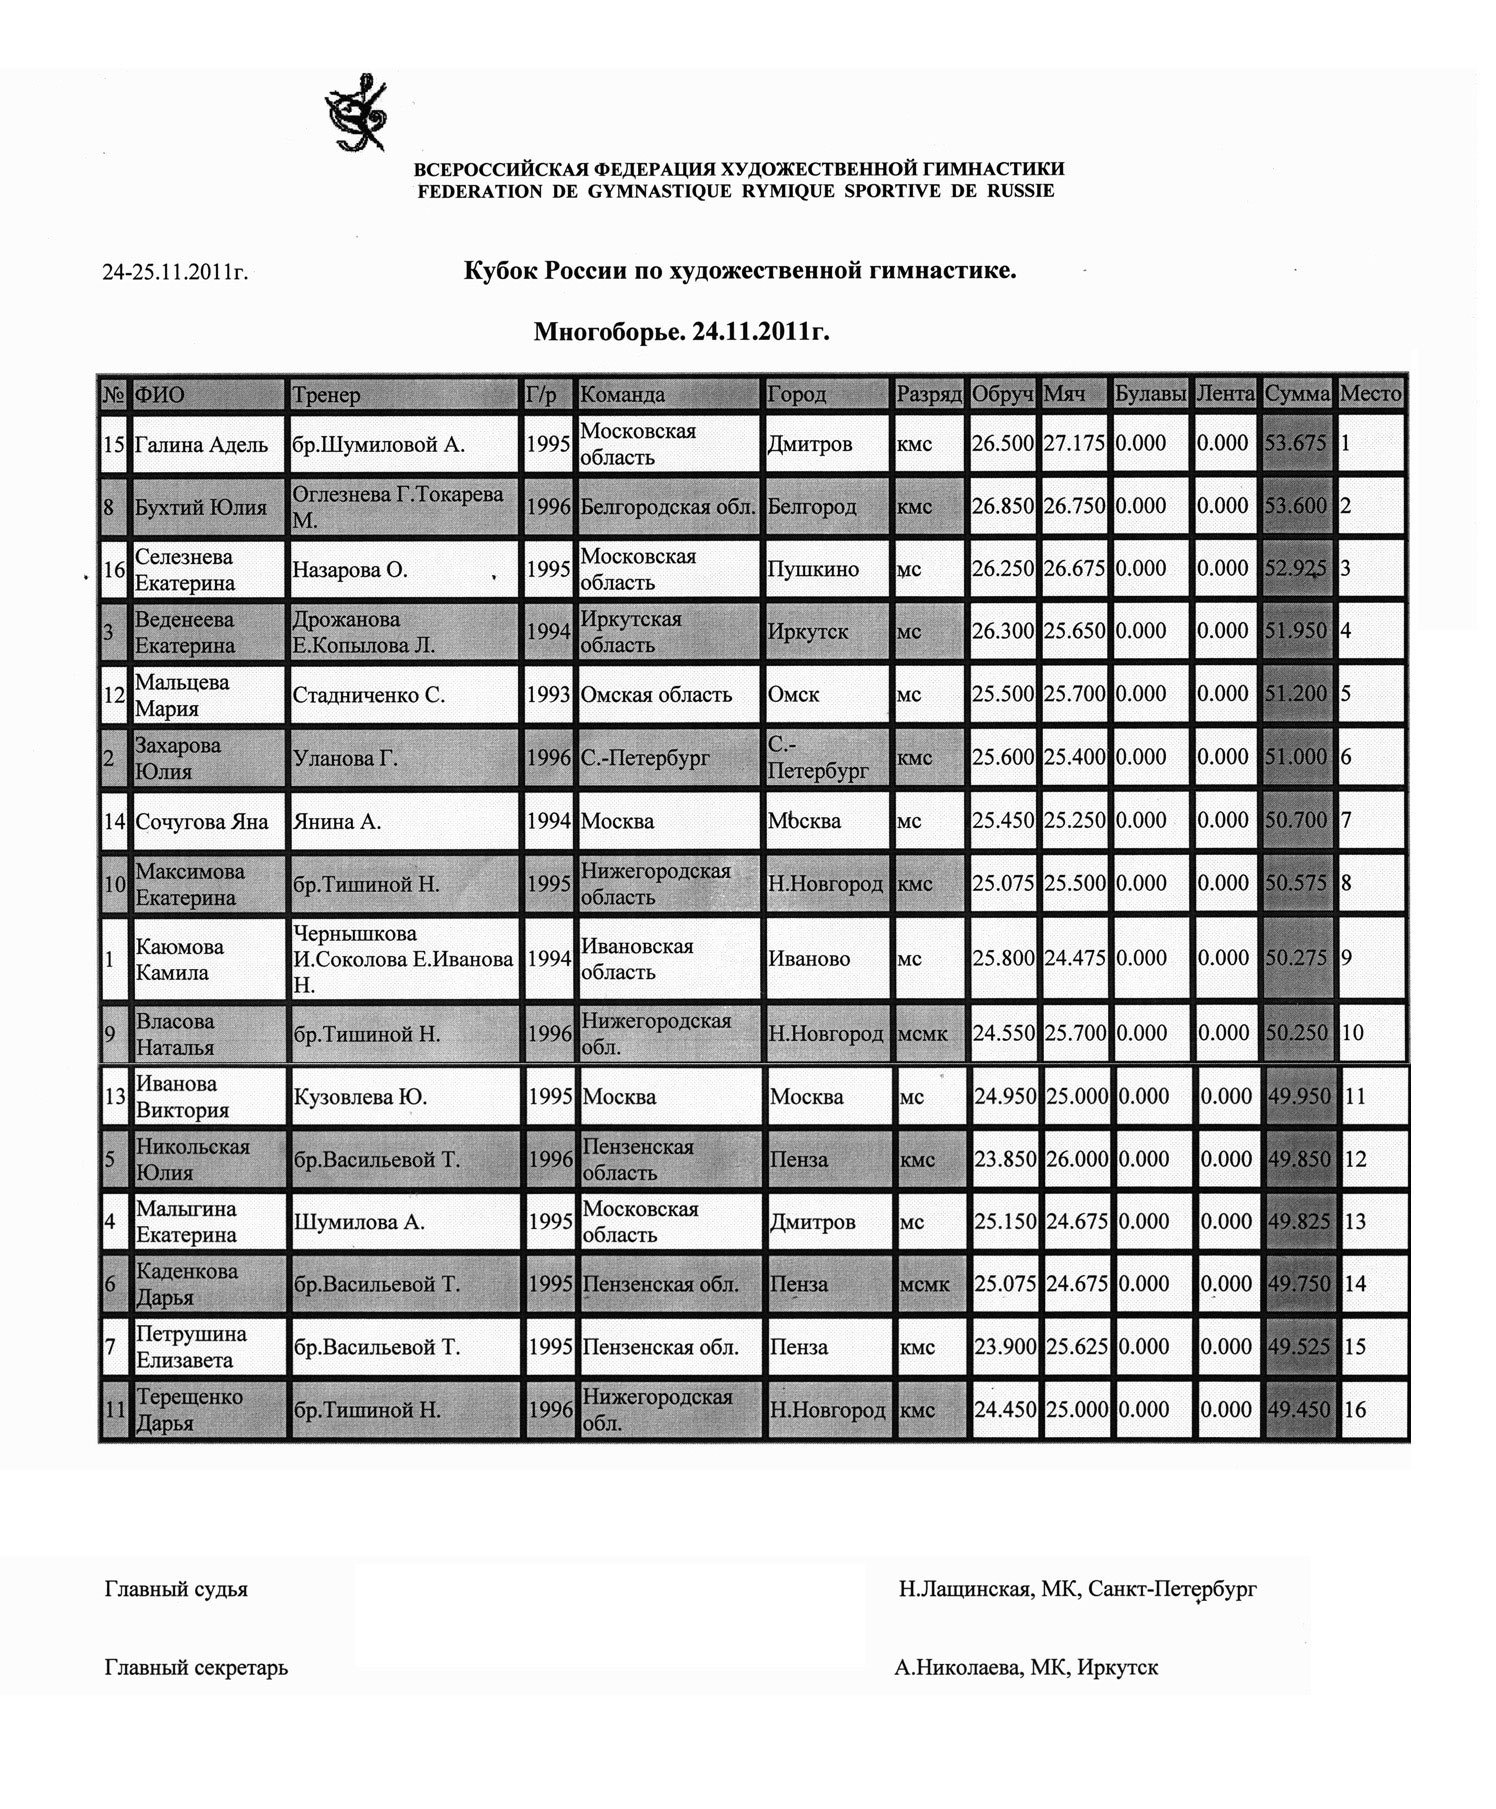 Соревнования по художественной гимнастике. классификация в мире, россии и спб